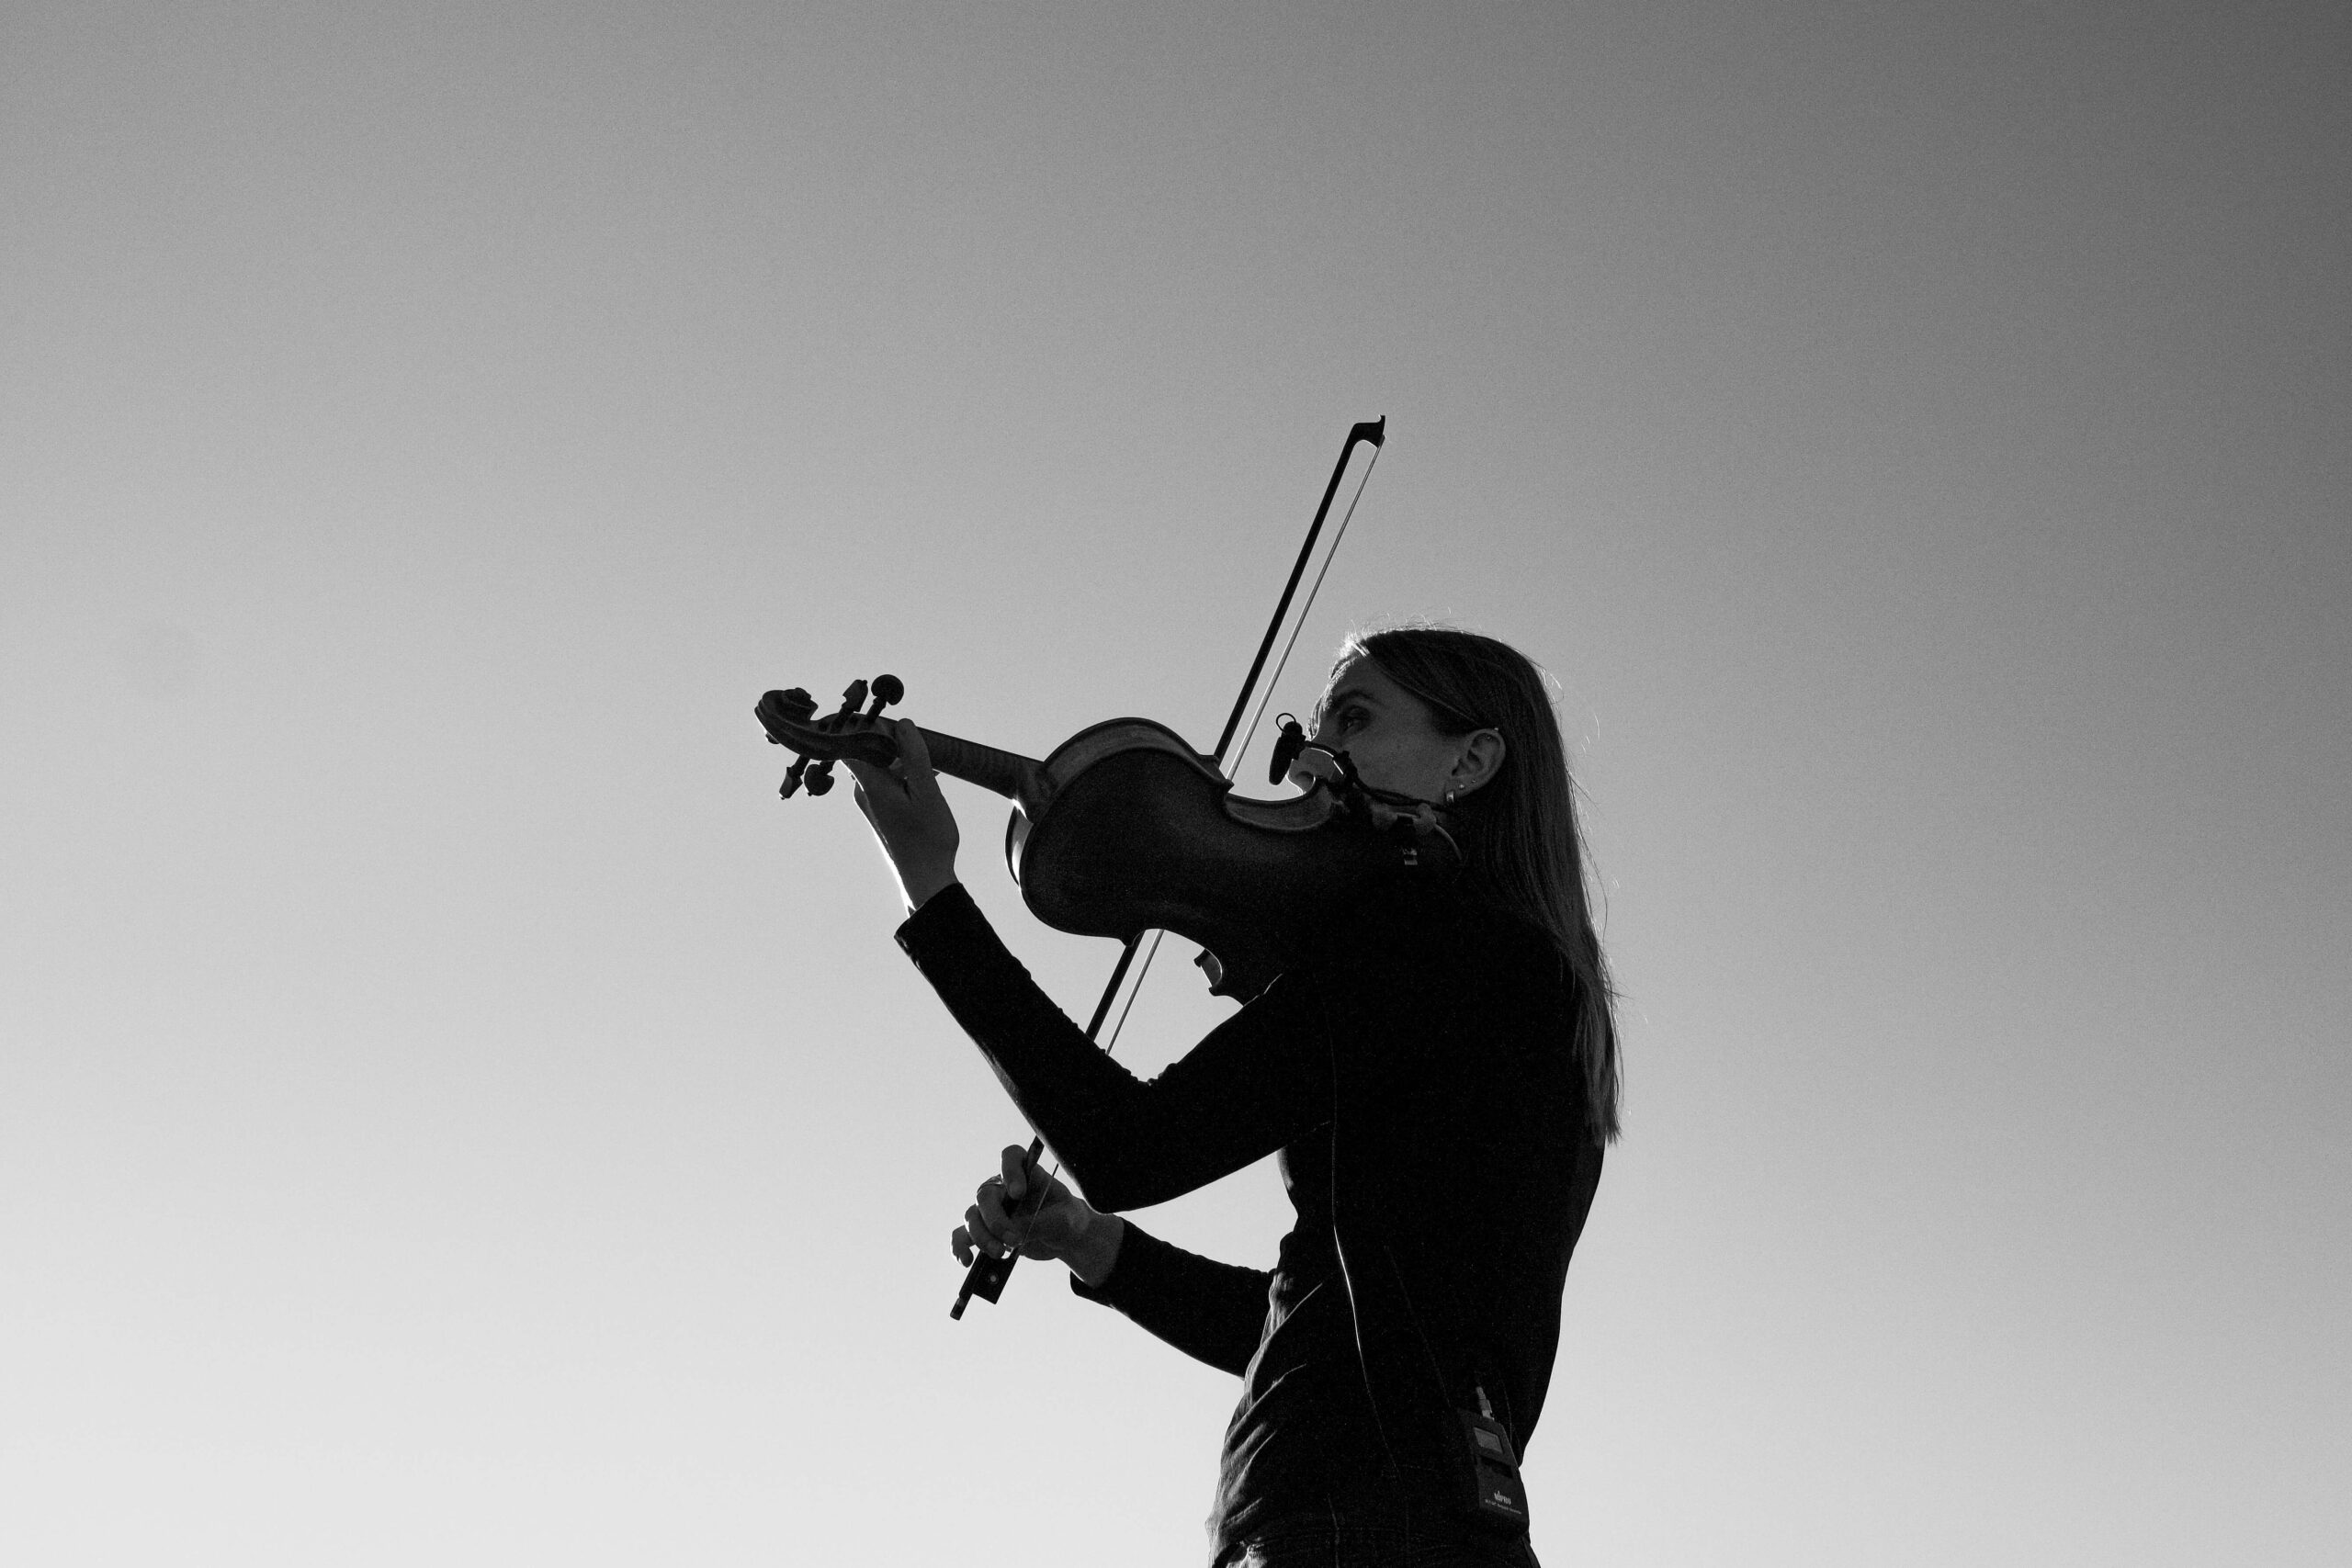 バイオリンを弾く女性の画像